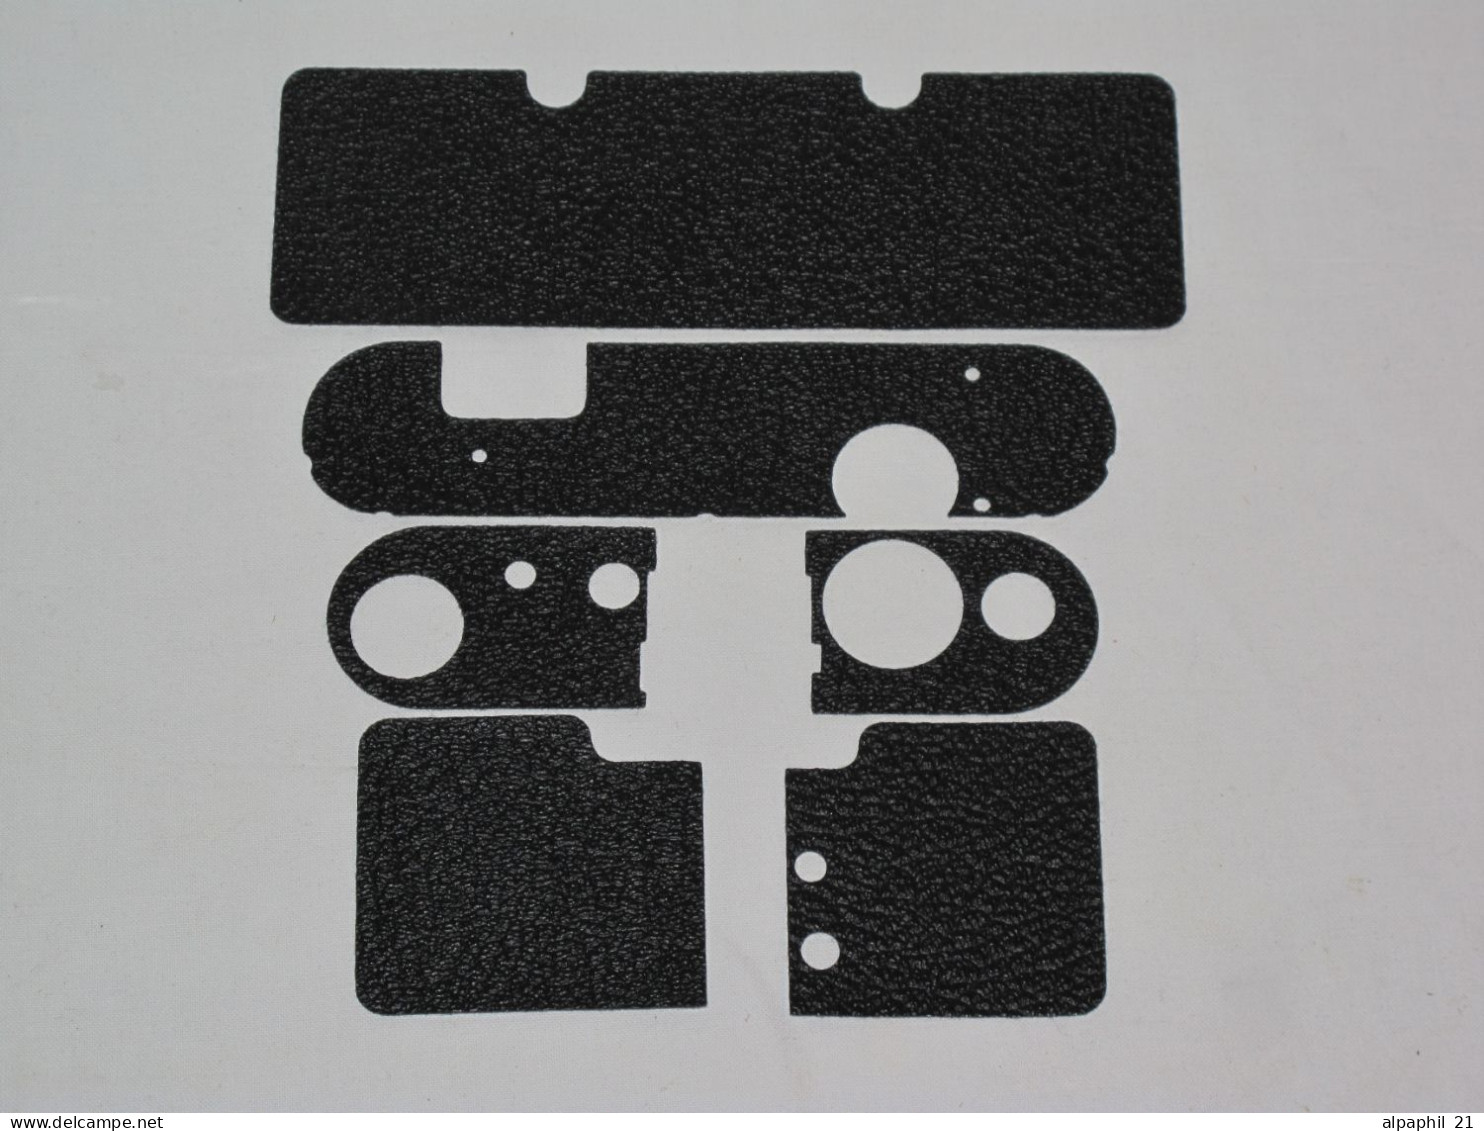 Alpa Reflex, Black Leather For Alpa Reflex I - Materiale & Accessori